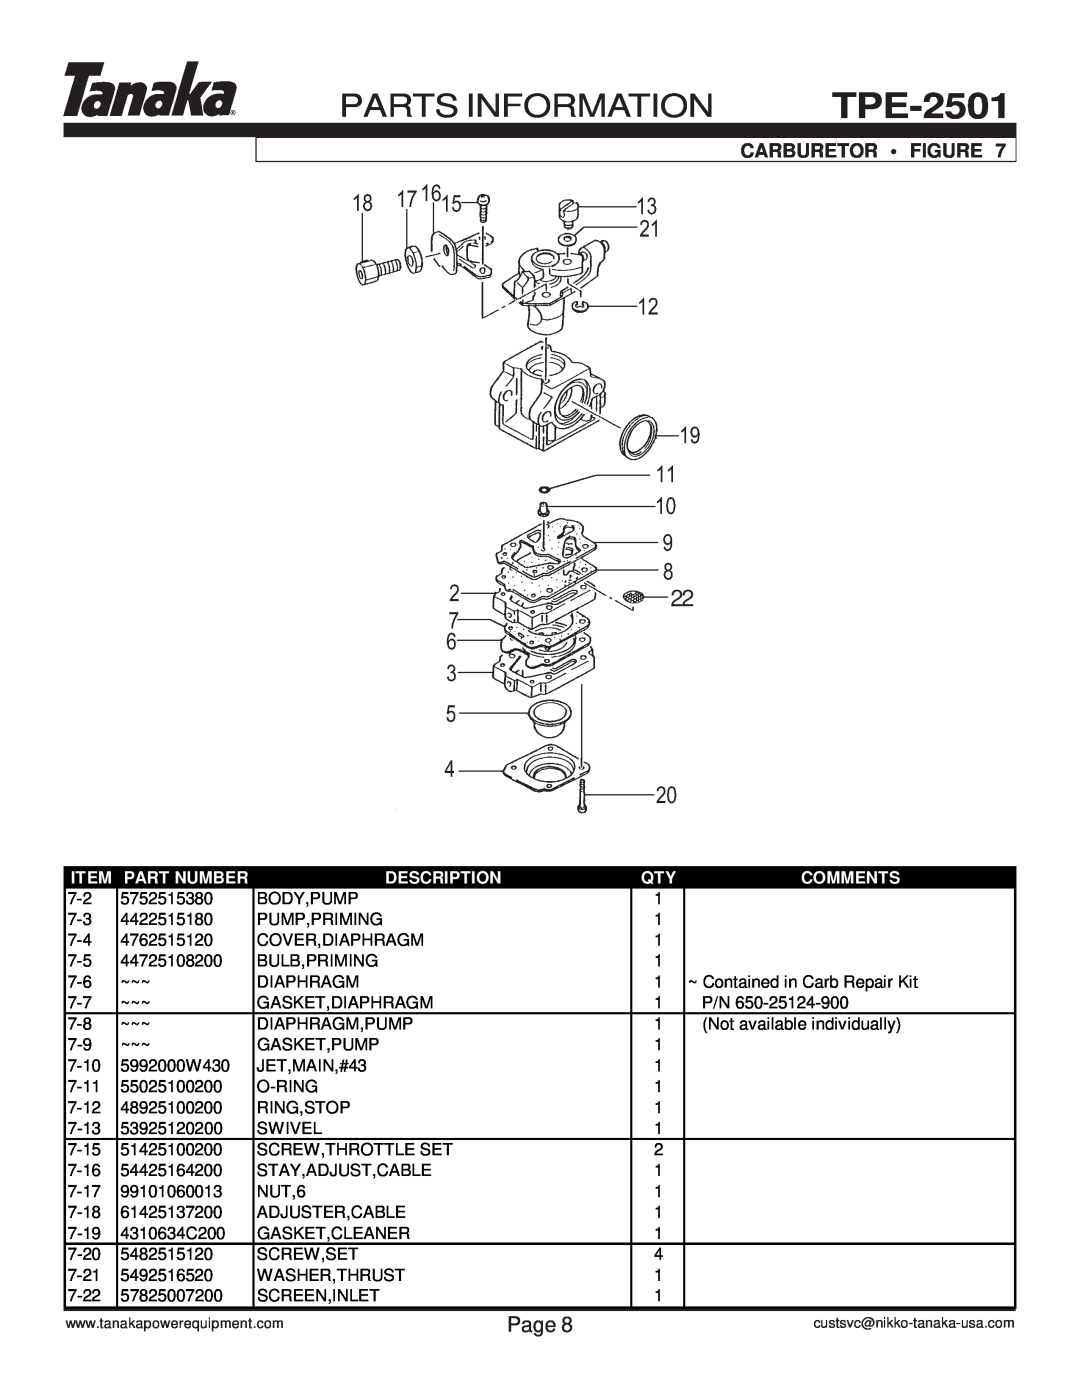 Tanaka TPE-2501 manual Parts Information, Carburetor Figure, Page, Part Number, Description, Comments 